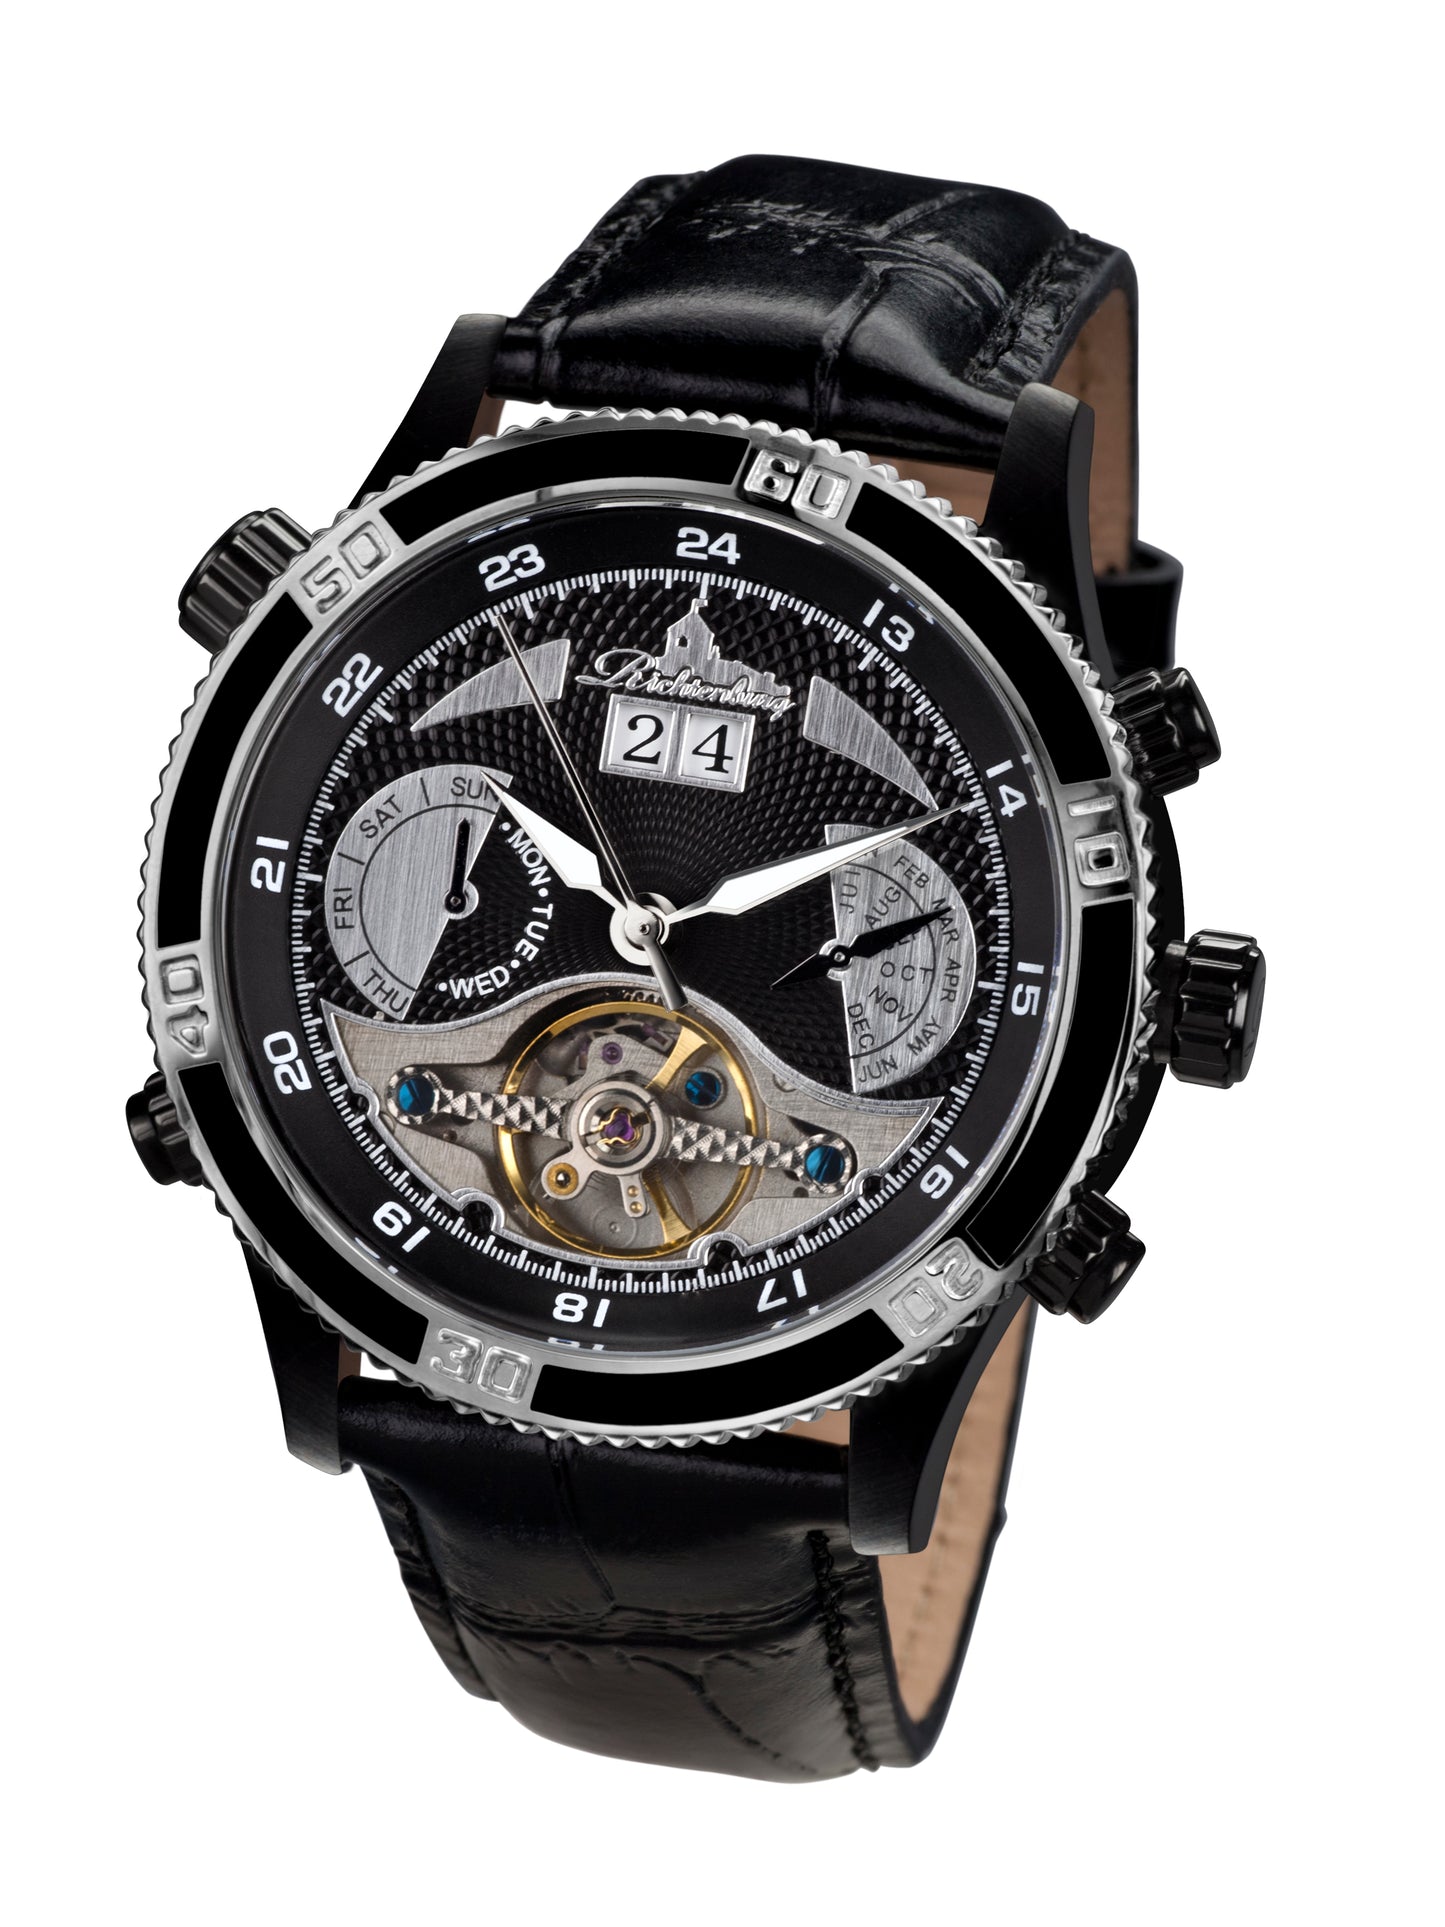 Automatic watches — Kaiman — Richtenburg — gold IP steel